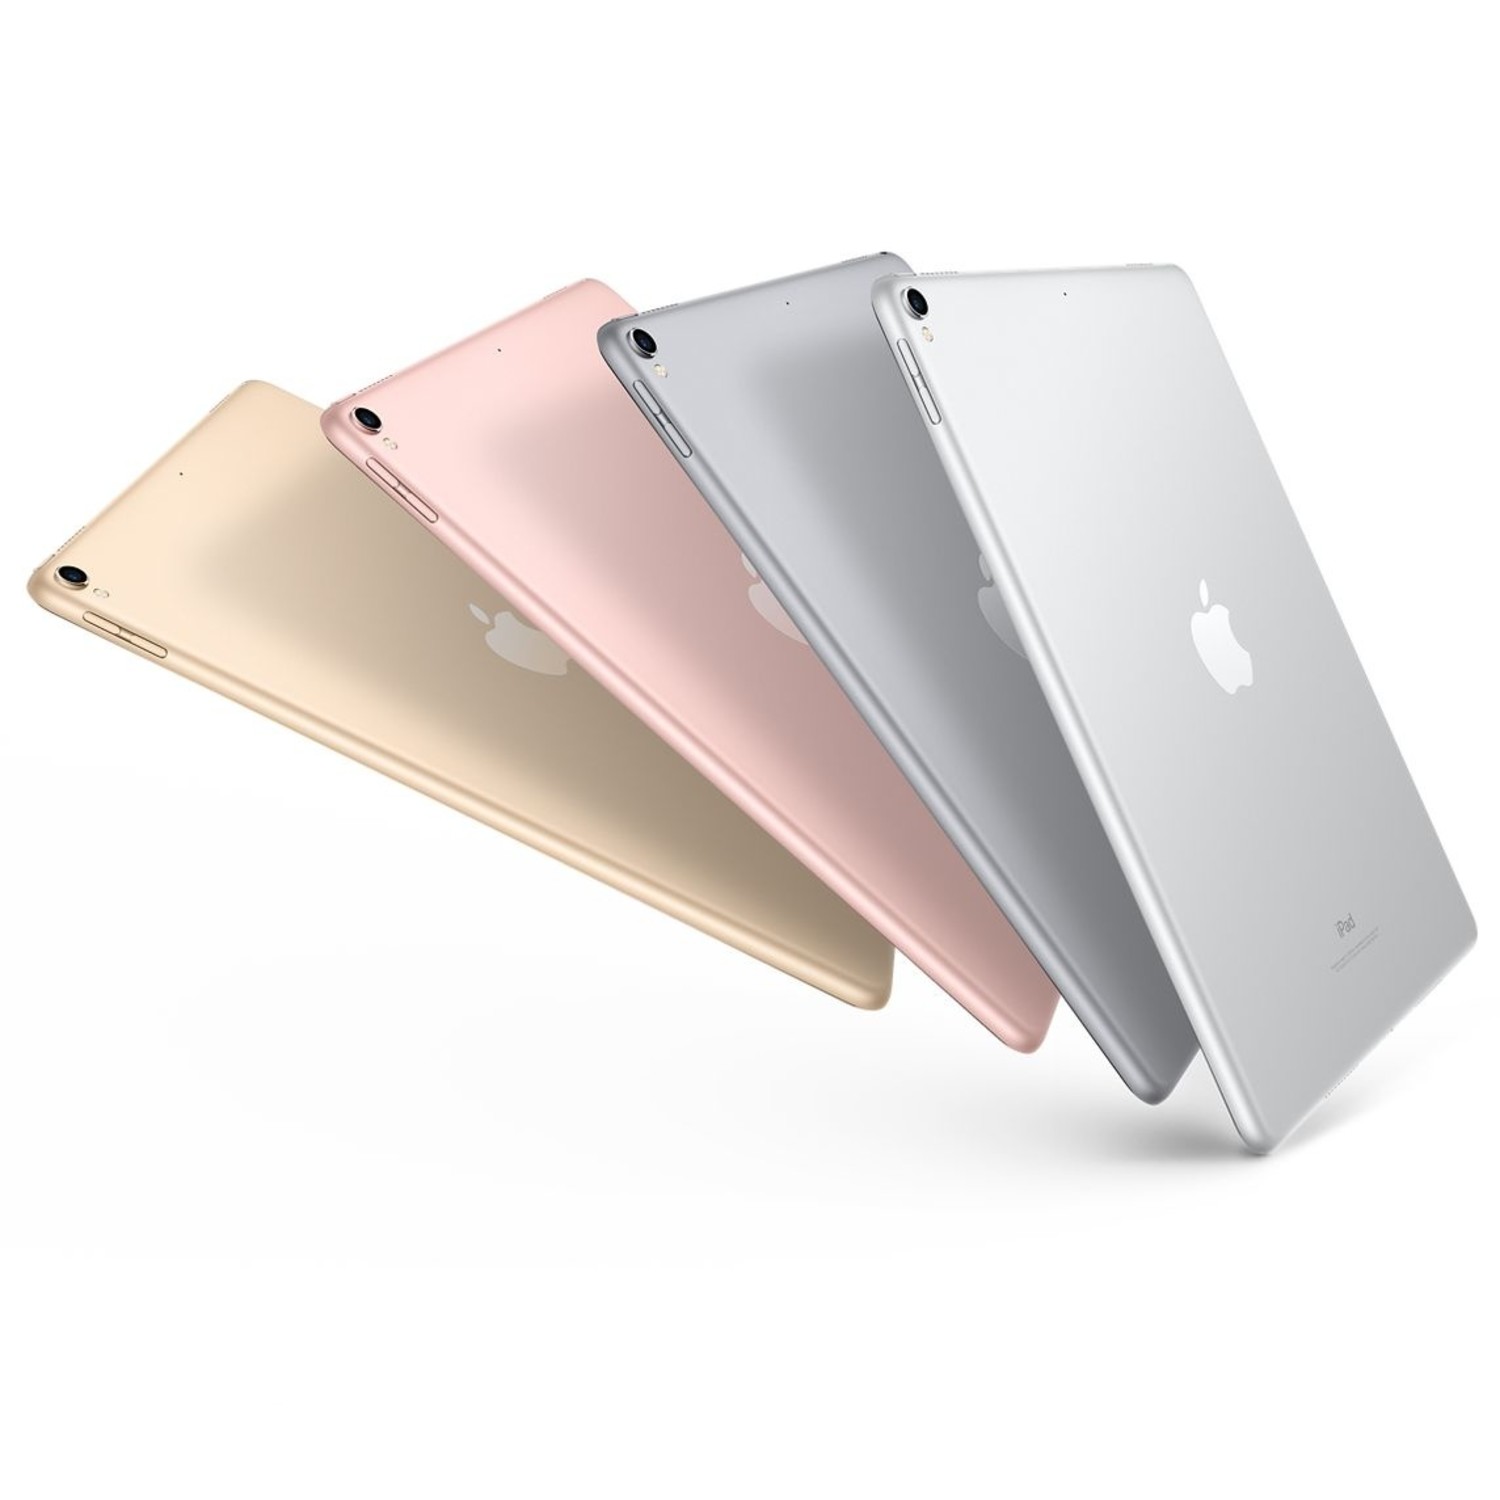 Apple iPad Pro 12,9 pouces 2e génération déverrouillé en usine